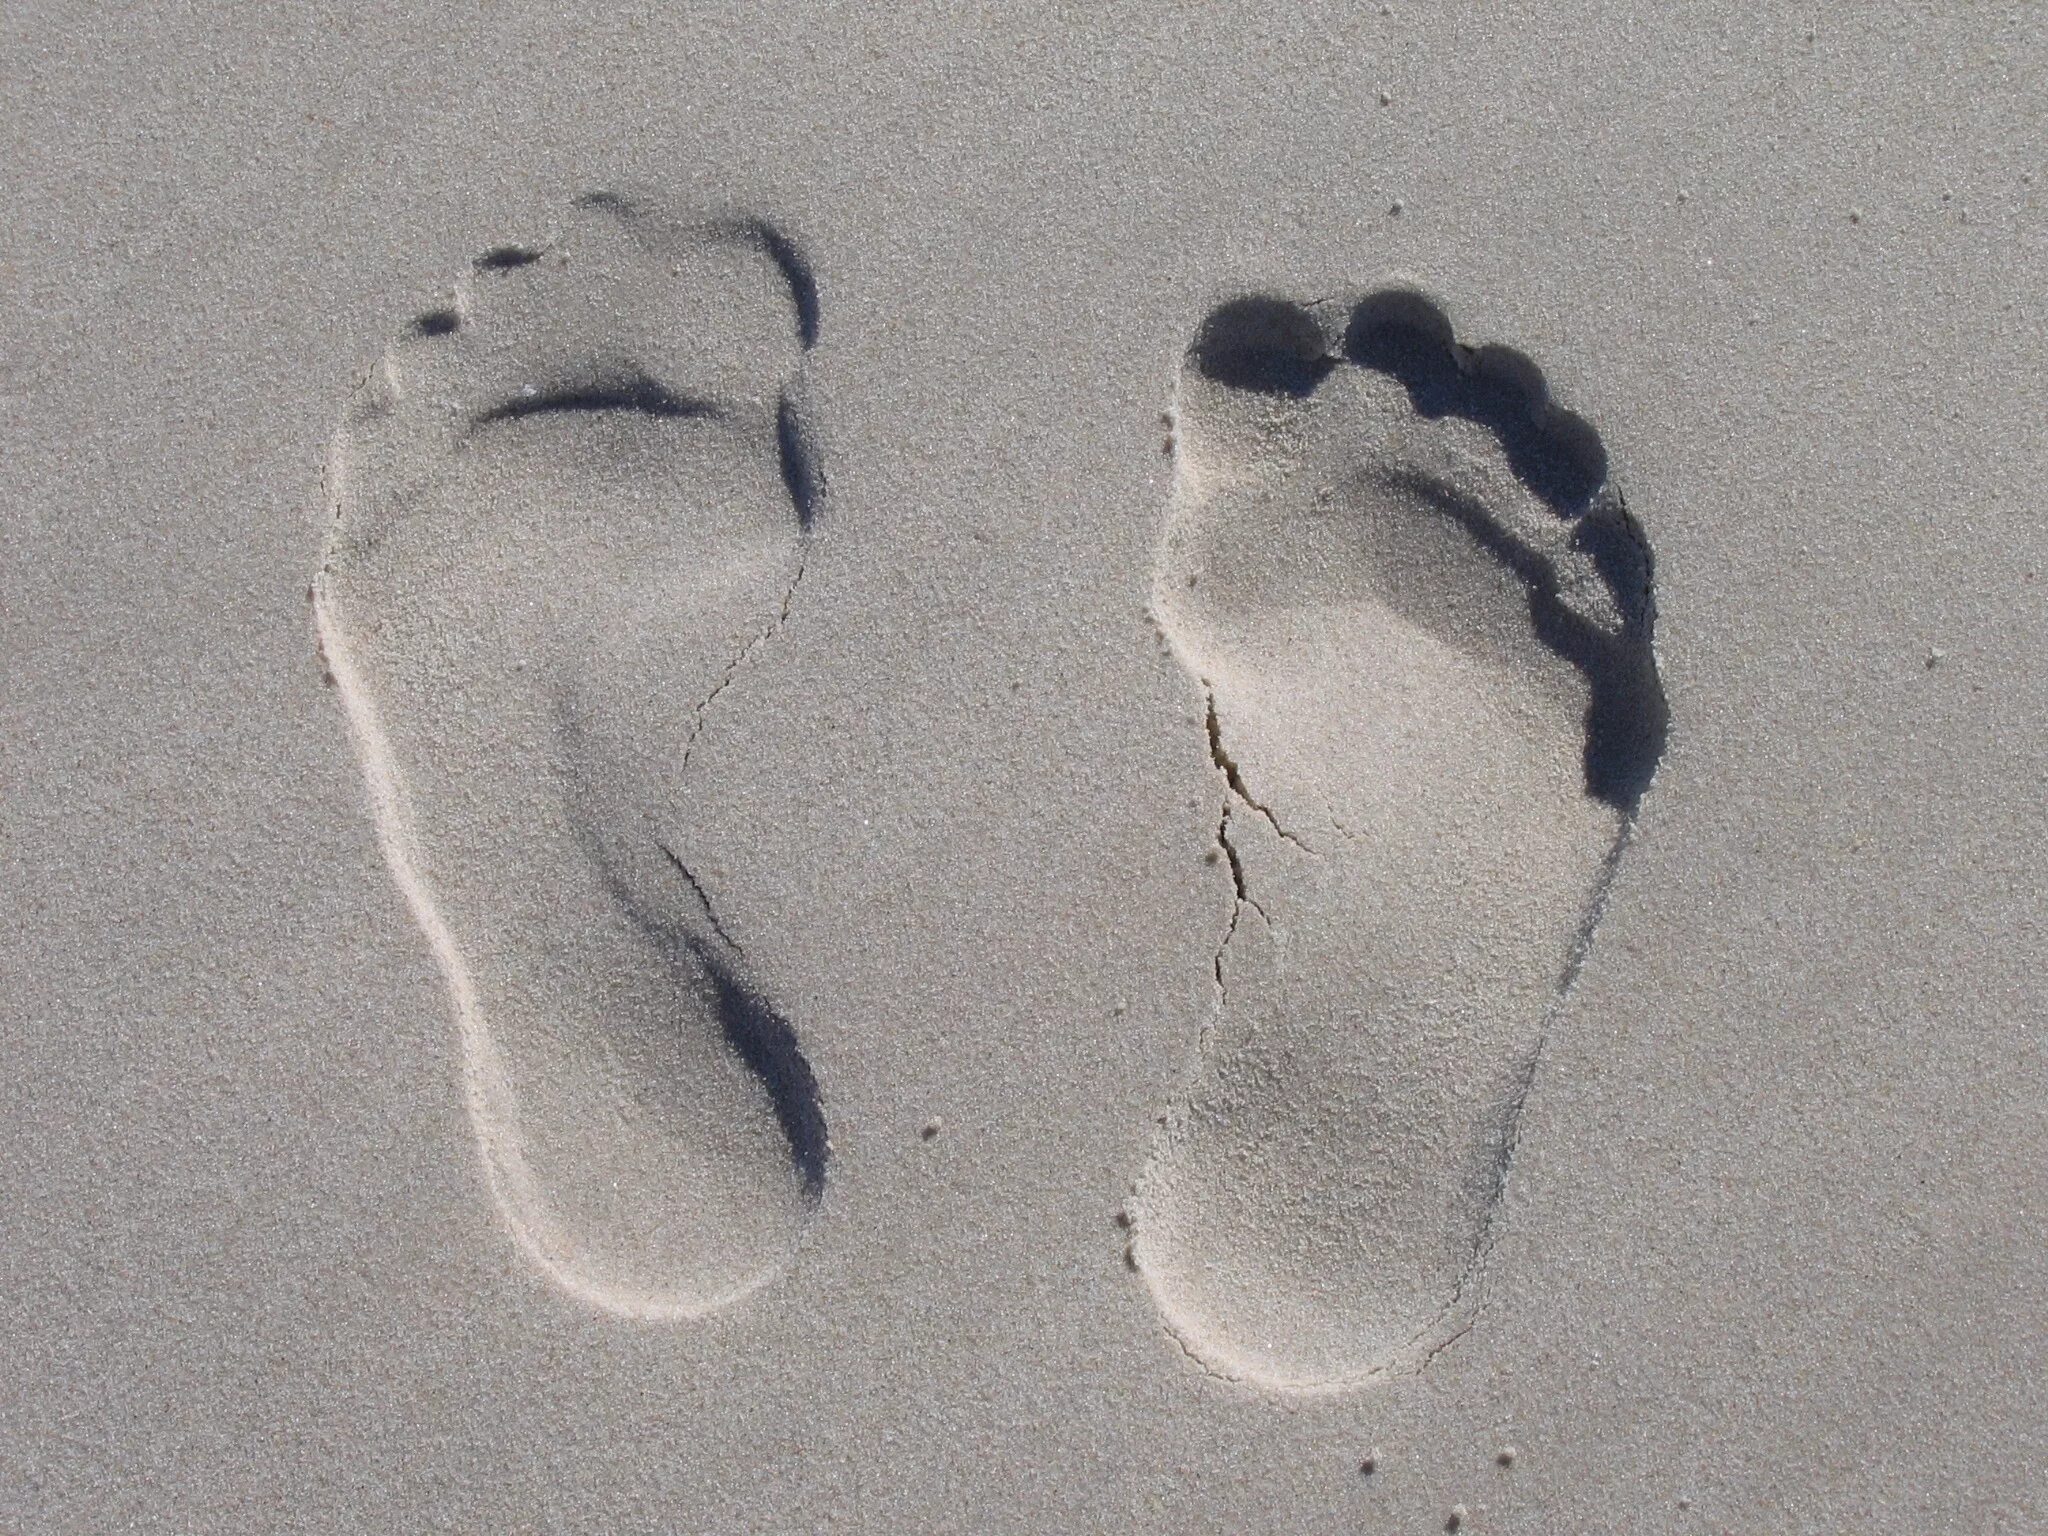 Шаров след в след. Отпечаток стопы. Отпечаток следа ноги. Отпечаток босой ноги. Отпечаток ноги на песке.